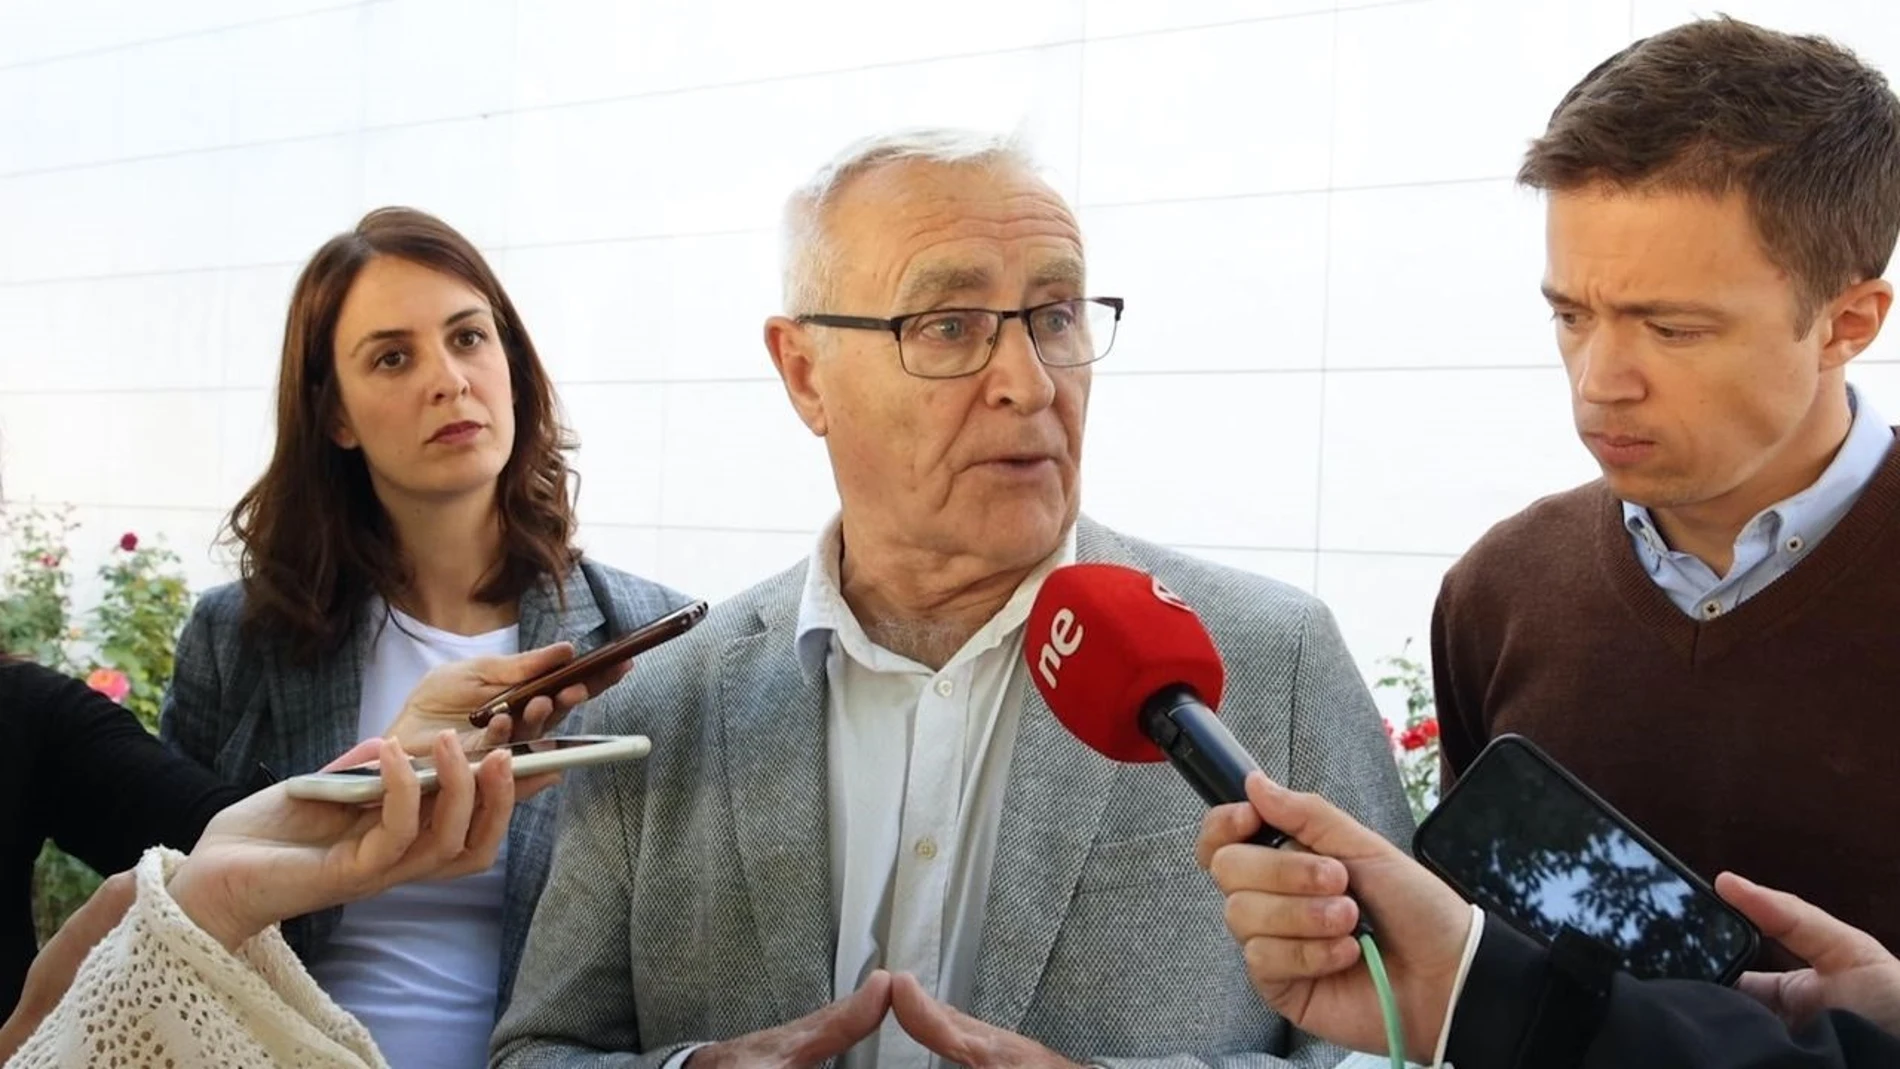 El alcalde de València, Joan Ribó, participa en Madrid en la jornada 'La ciudad de las ciudades. El Ayuntamiento en tu barrio', organizadas por Más Madrid